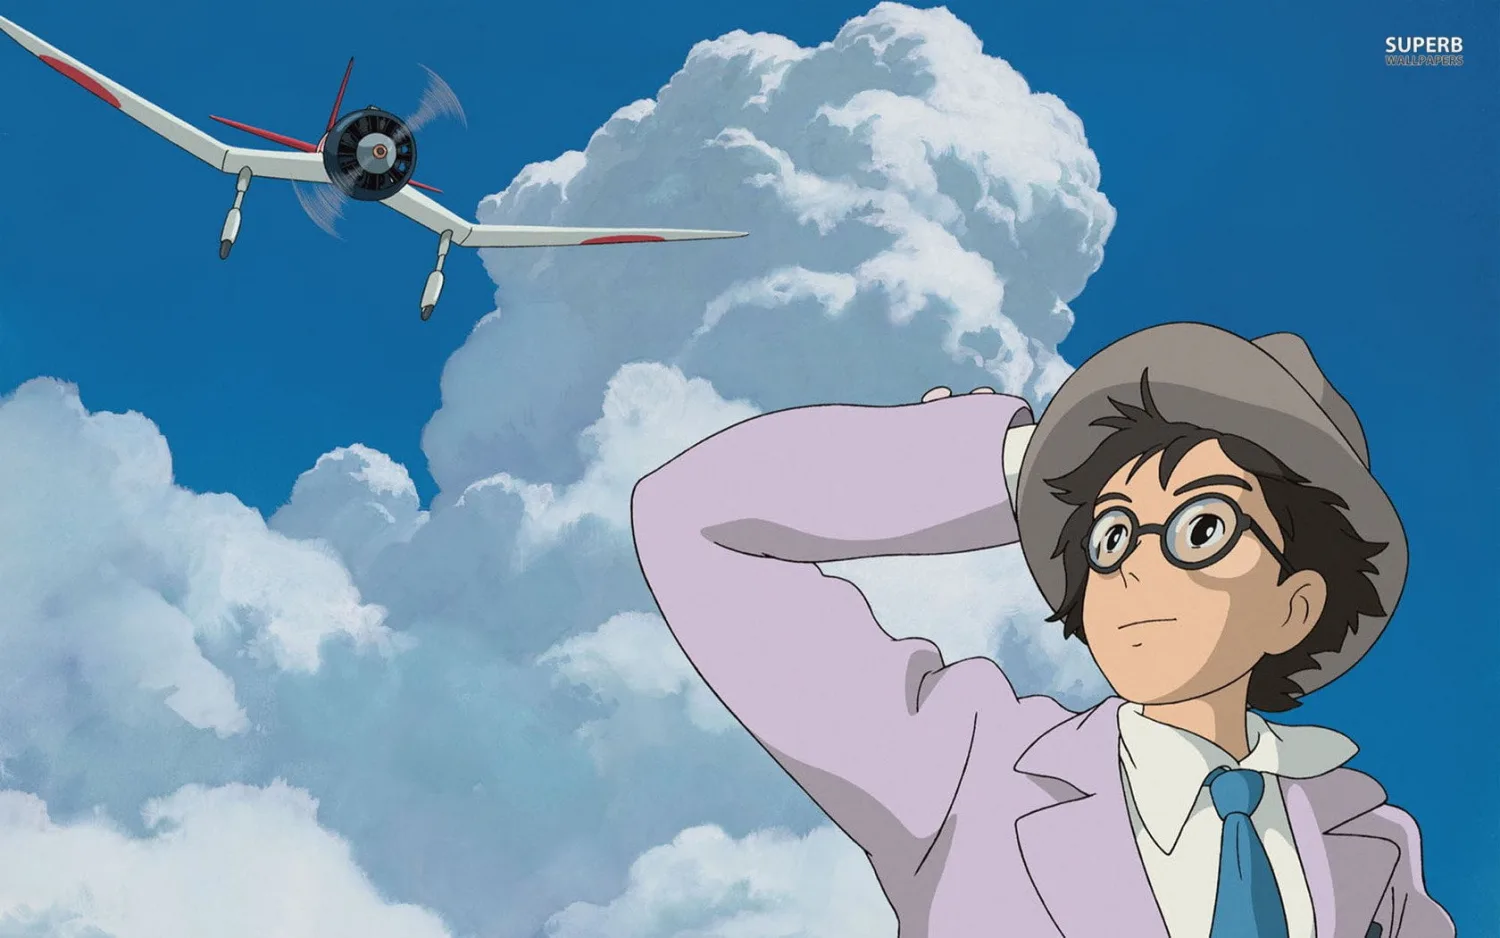 ‘Si alza il vento’ 10 anni dopo, perché rivedere il film testamento di Miyazaki